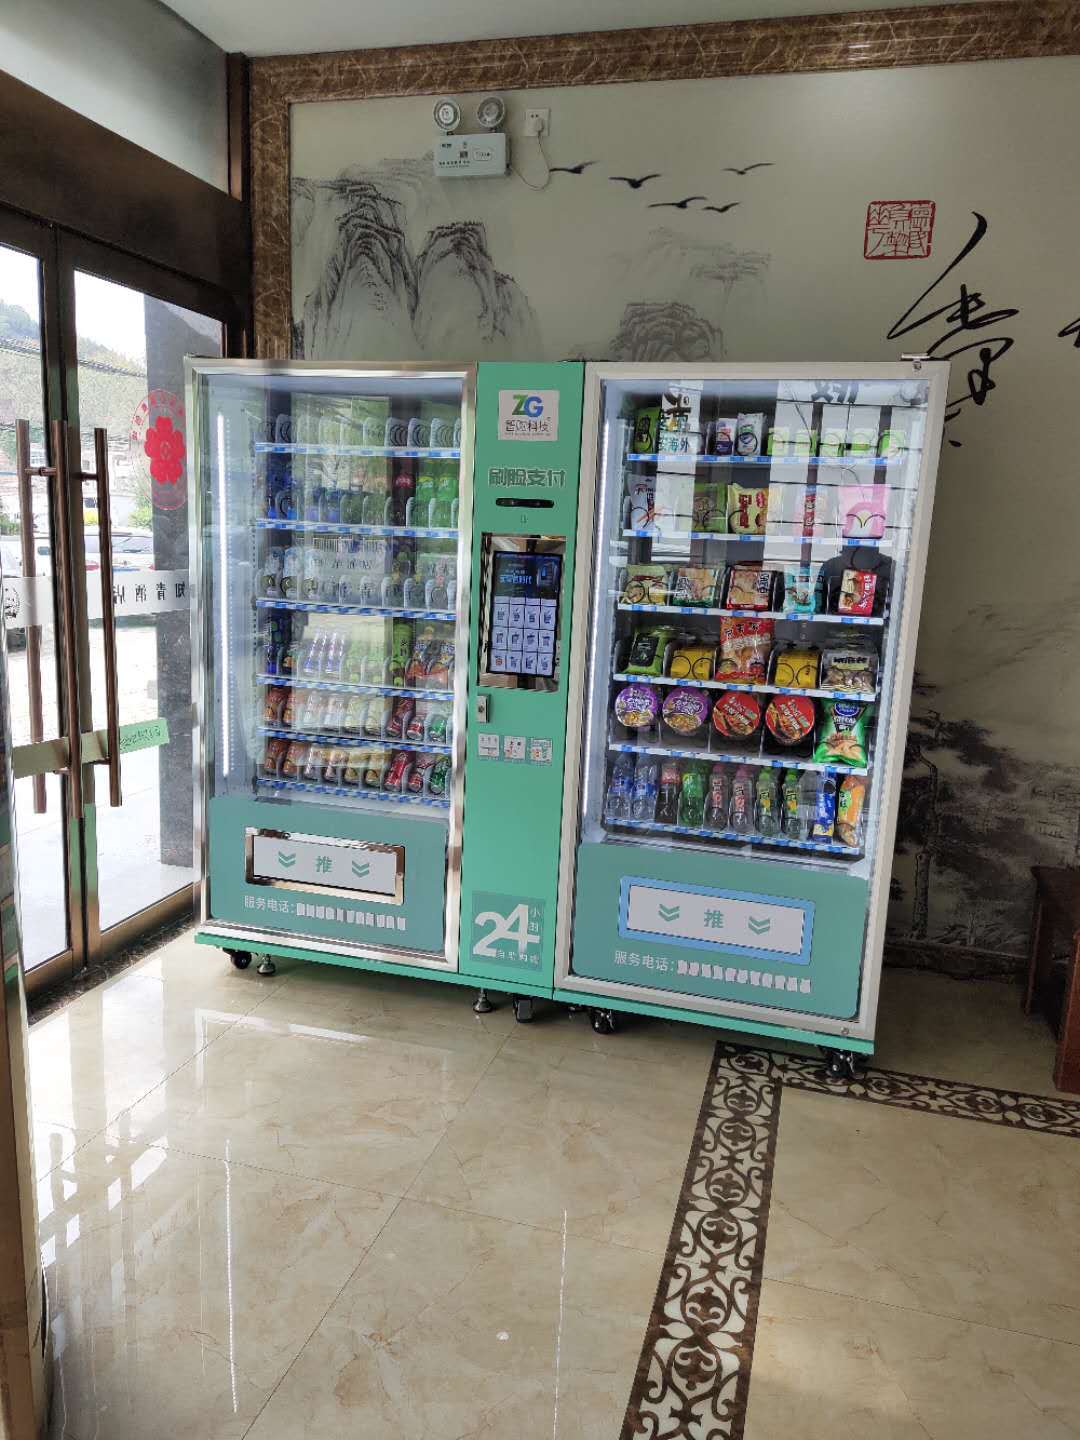 冰淇淋机品牌排行榜_网购冰淇淋机问题频出京东客服被消费者质疑推诿